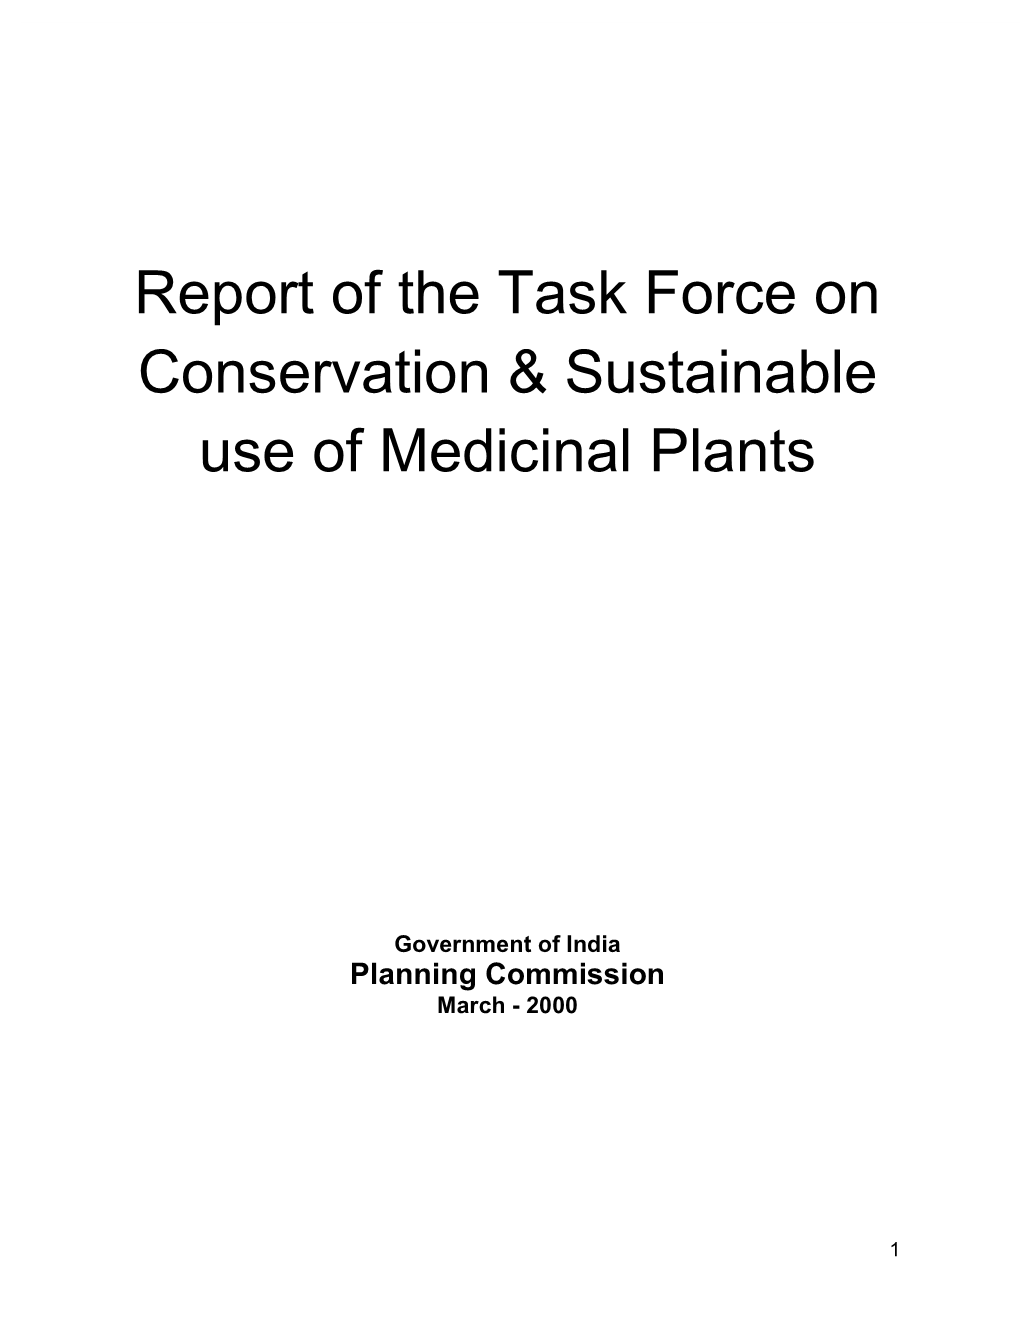 Task Force on Medicinal Plants